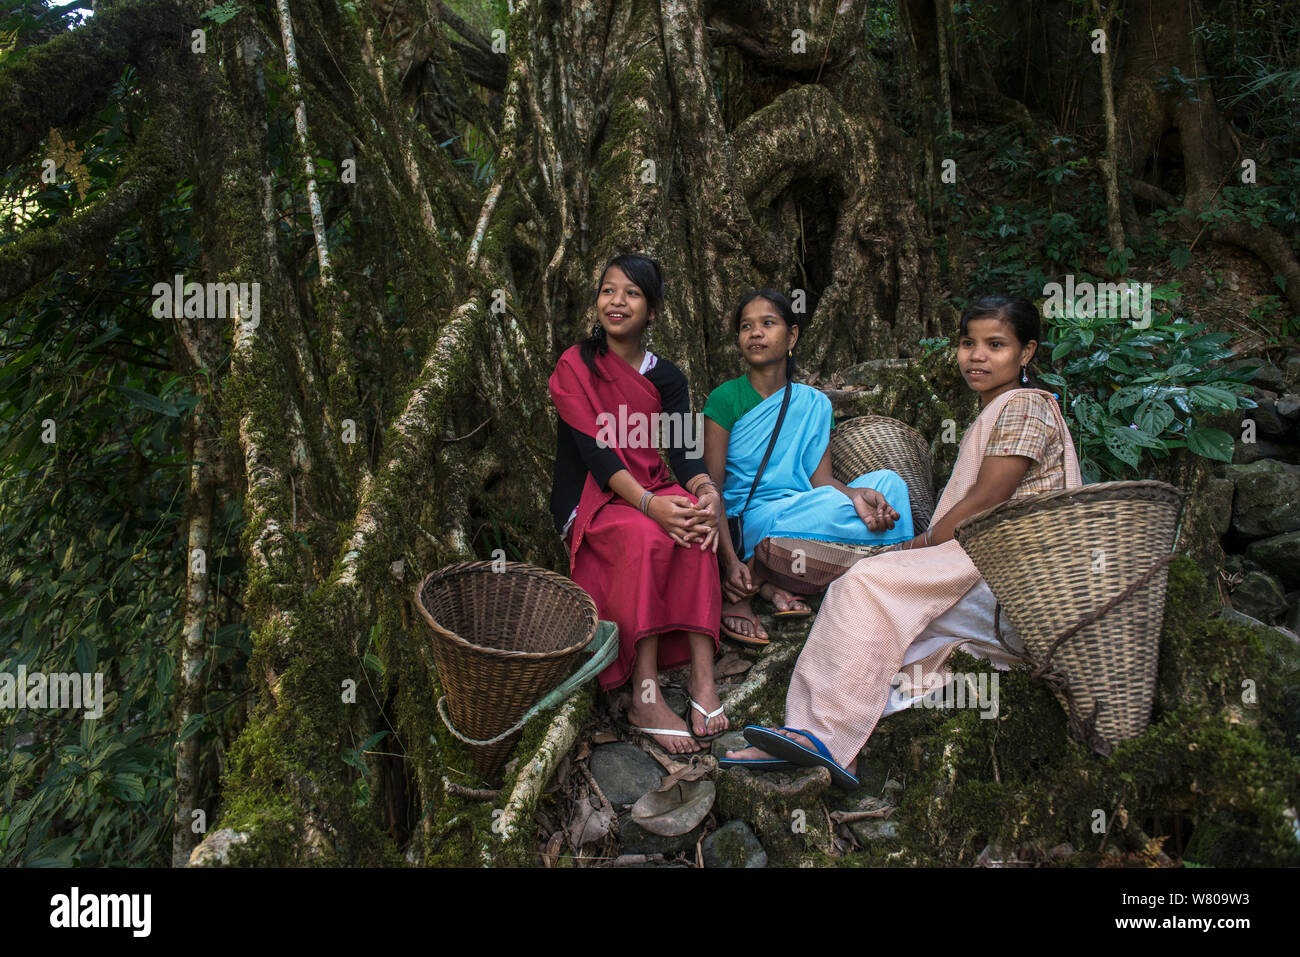 Les jeunes femmes avec des paniers Khasi Prochain repos pont racine formée de figuier Caoutchouc (Ficus elastica) Nongriat khasie, collines. Meghalaya, dans le Nord Est de l'Inde. Banque D'Images